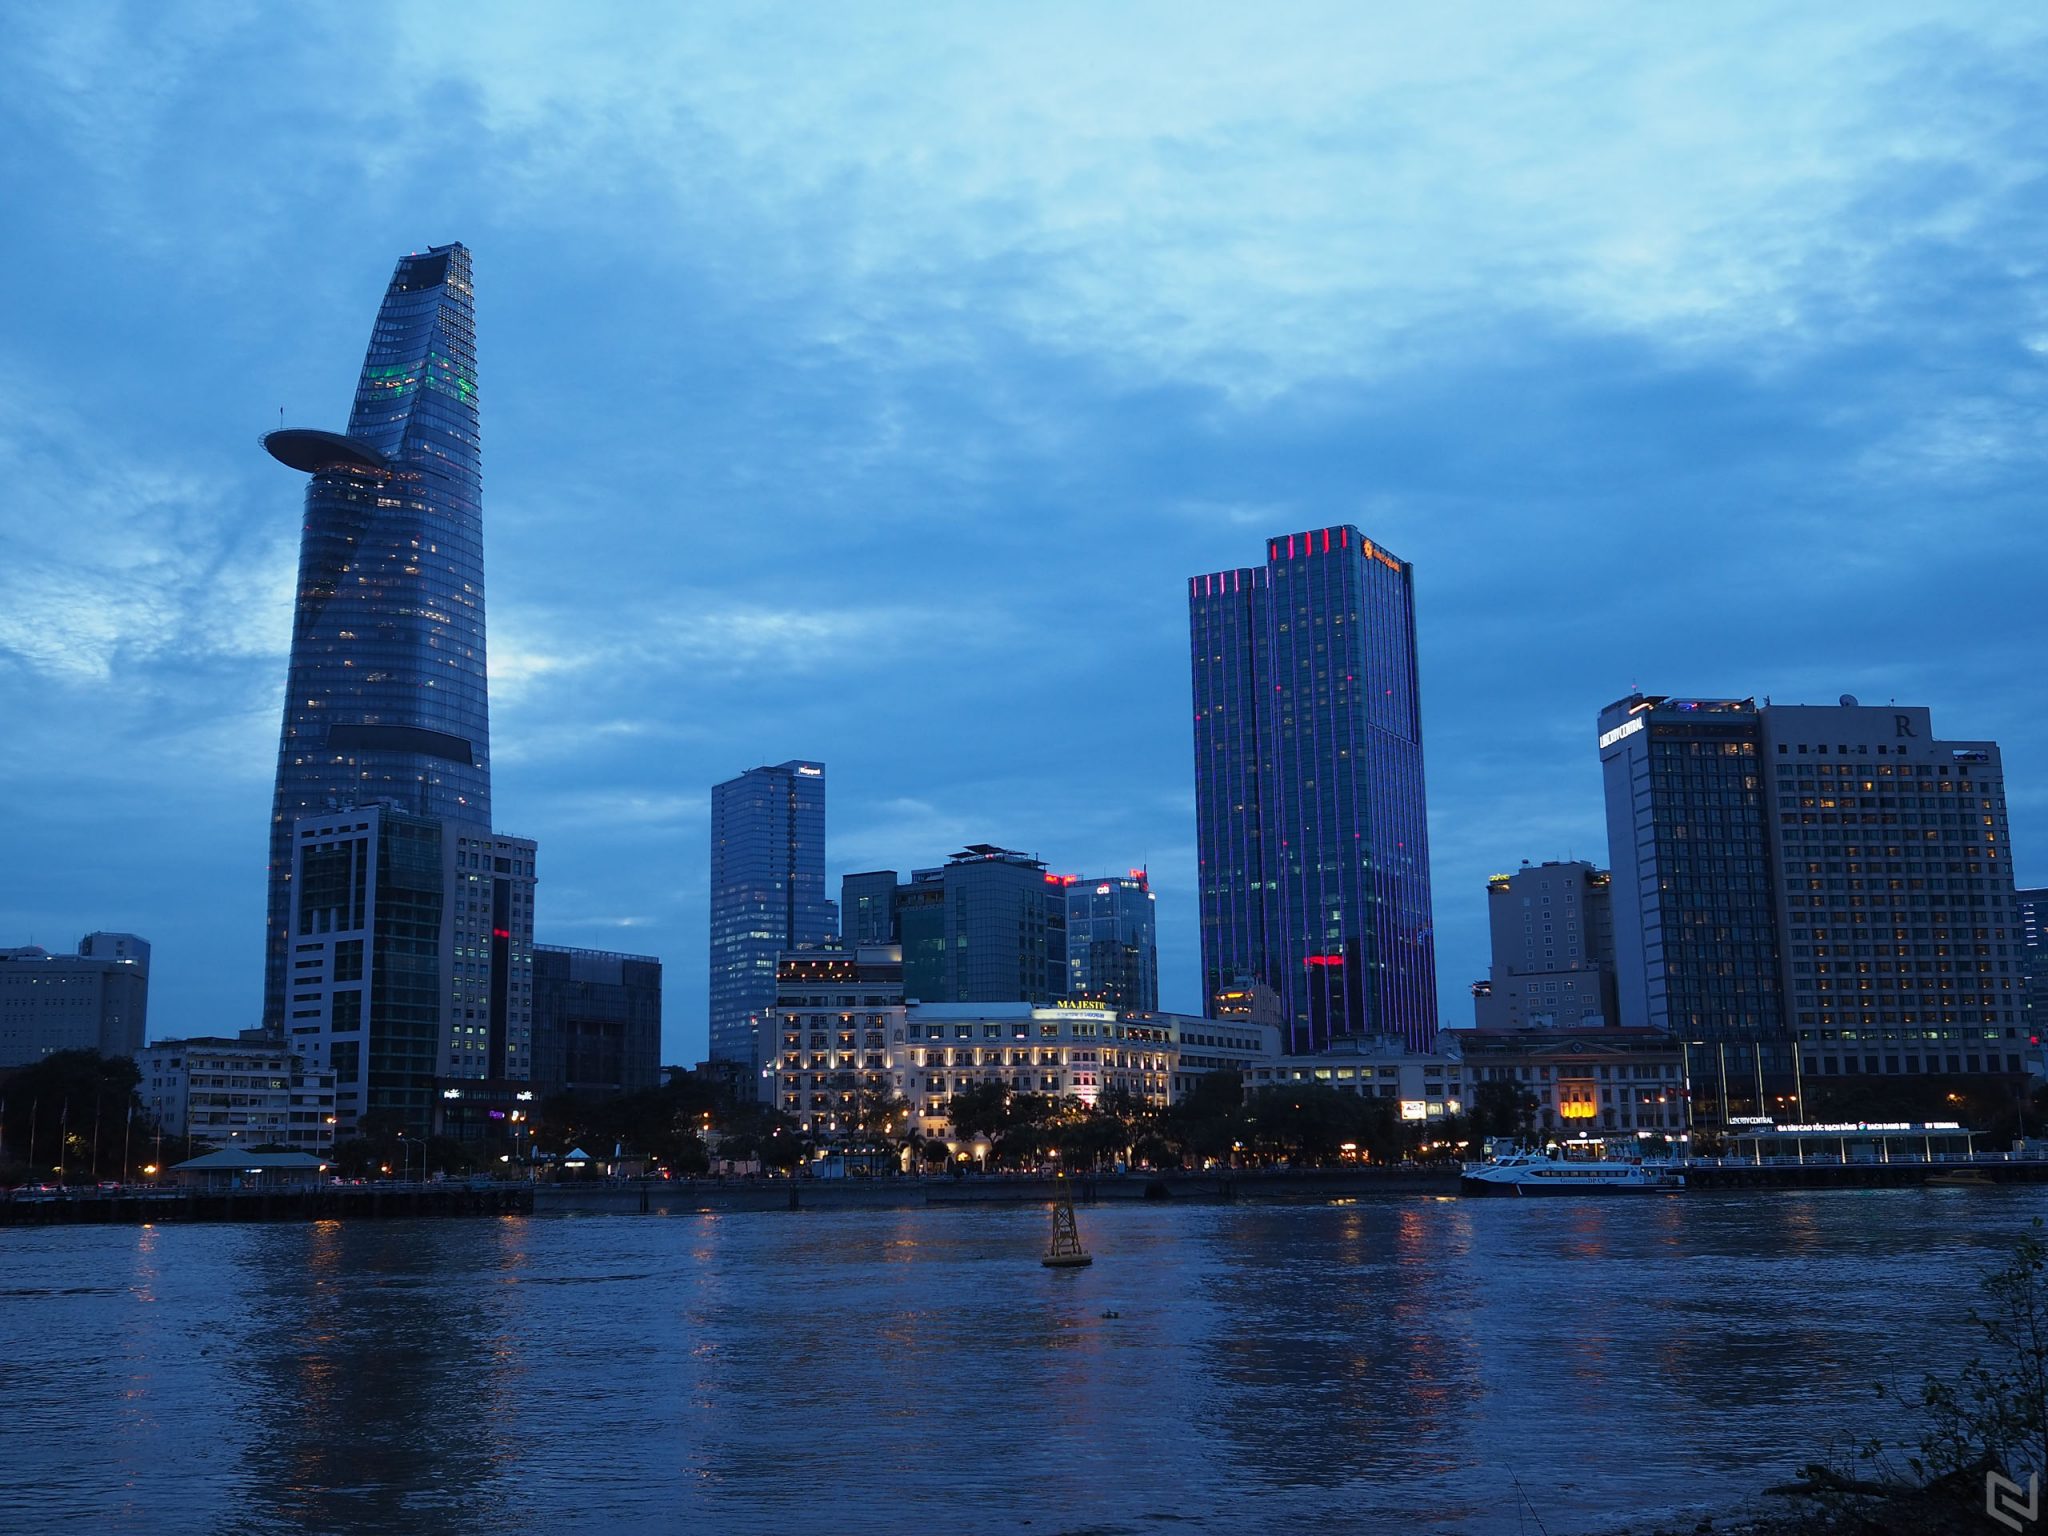 Dạo vòng quận 2 - Sài Gòn từ chiều đến tối với Olympus Pen E-PL9